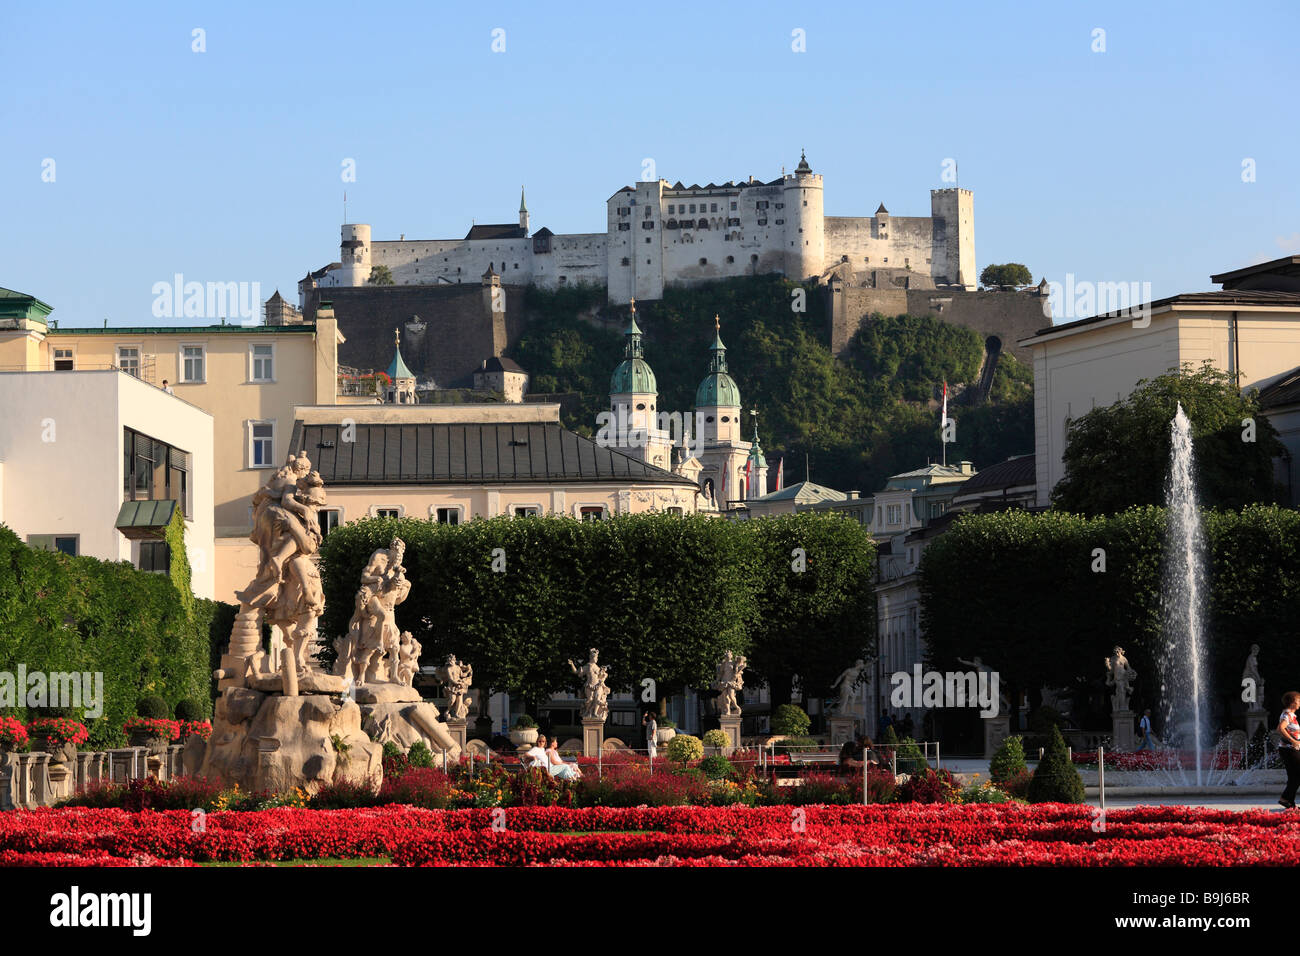 Mirabellgarten mit Raptus Gruppe Skulpturen, Dom, Festung Hohensalzburg, Festung Hohensalzburg, Salzburg, Österreich, Eur Stockfoto